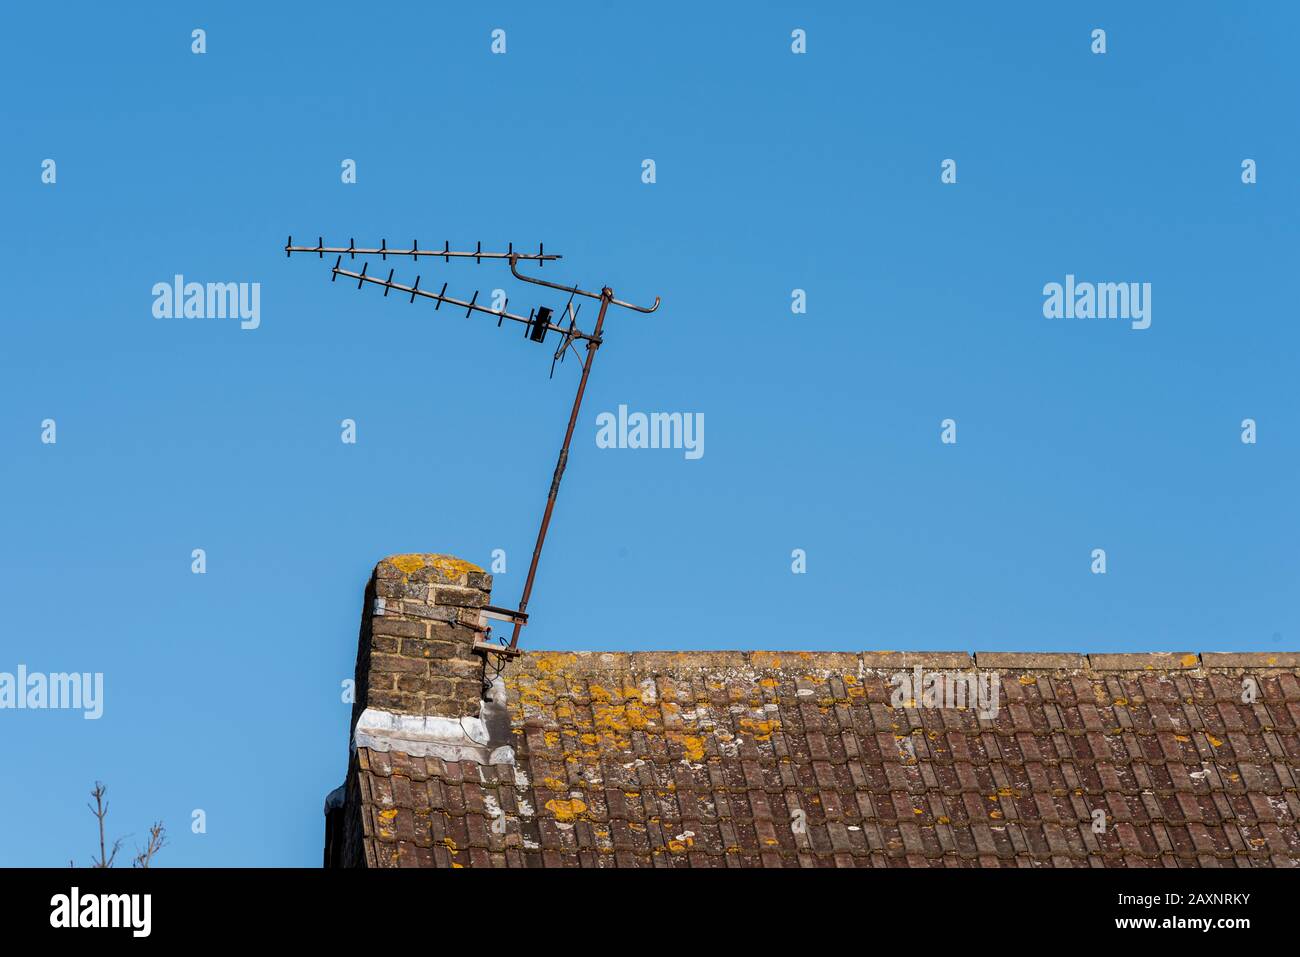 Eine Haus-TV-Antenne, beschädigt durch Storm Ciara, hängt schräg an einem Stummelschornstein. Extern montierte tv-Antenne auf dem Dach des Hauses Stockfoto